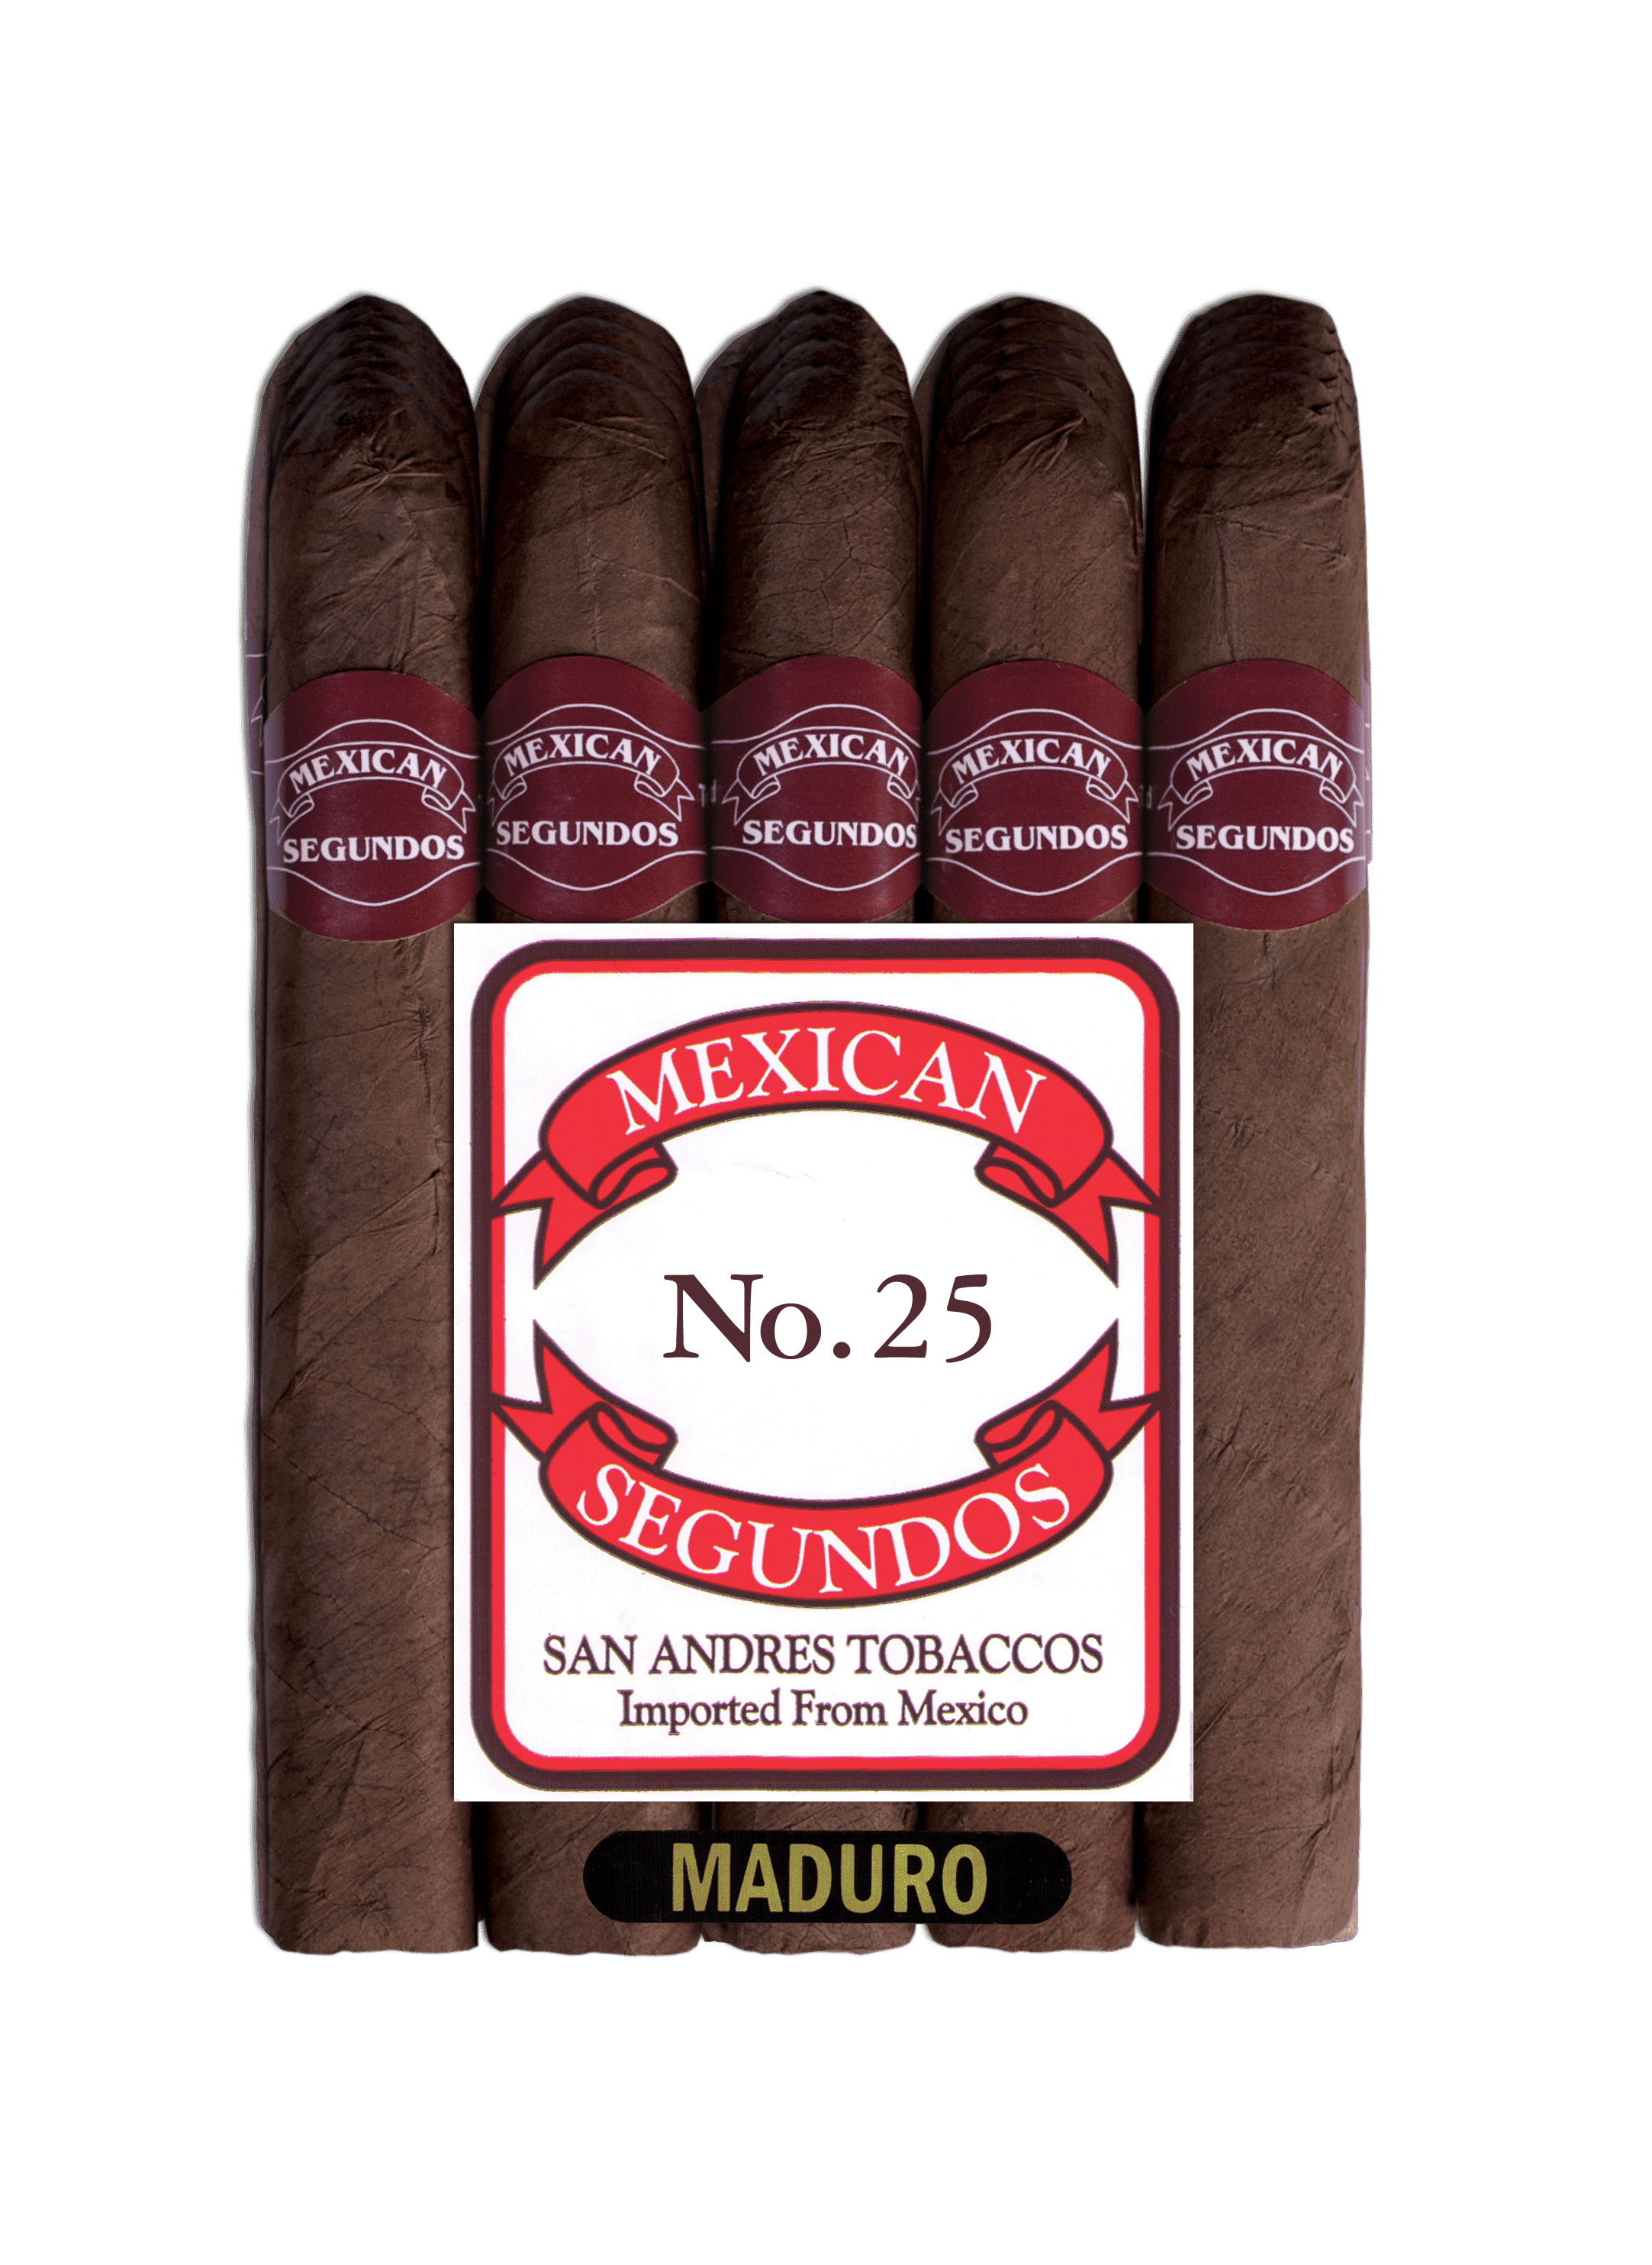 20 count bundle of Mexican Segundos No. 25 Maduro cigars